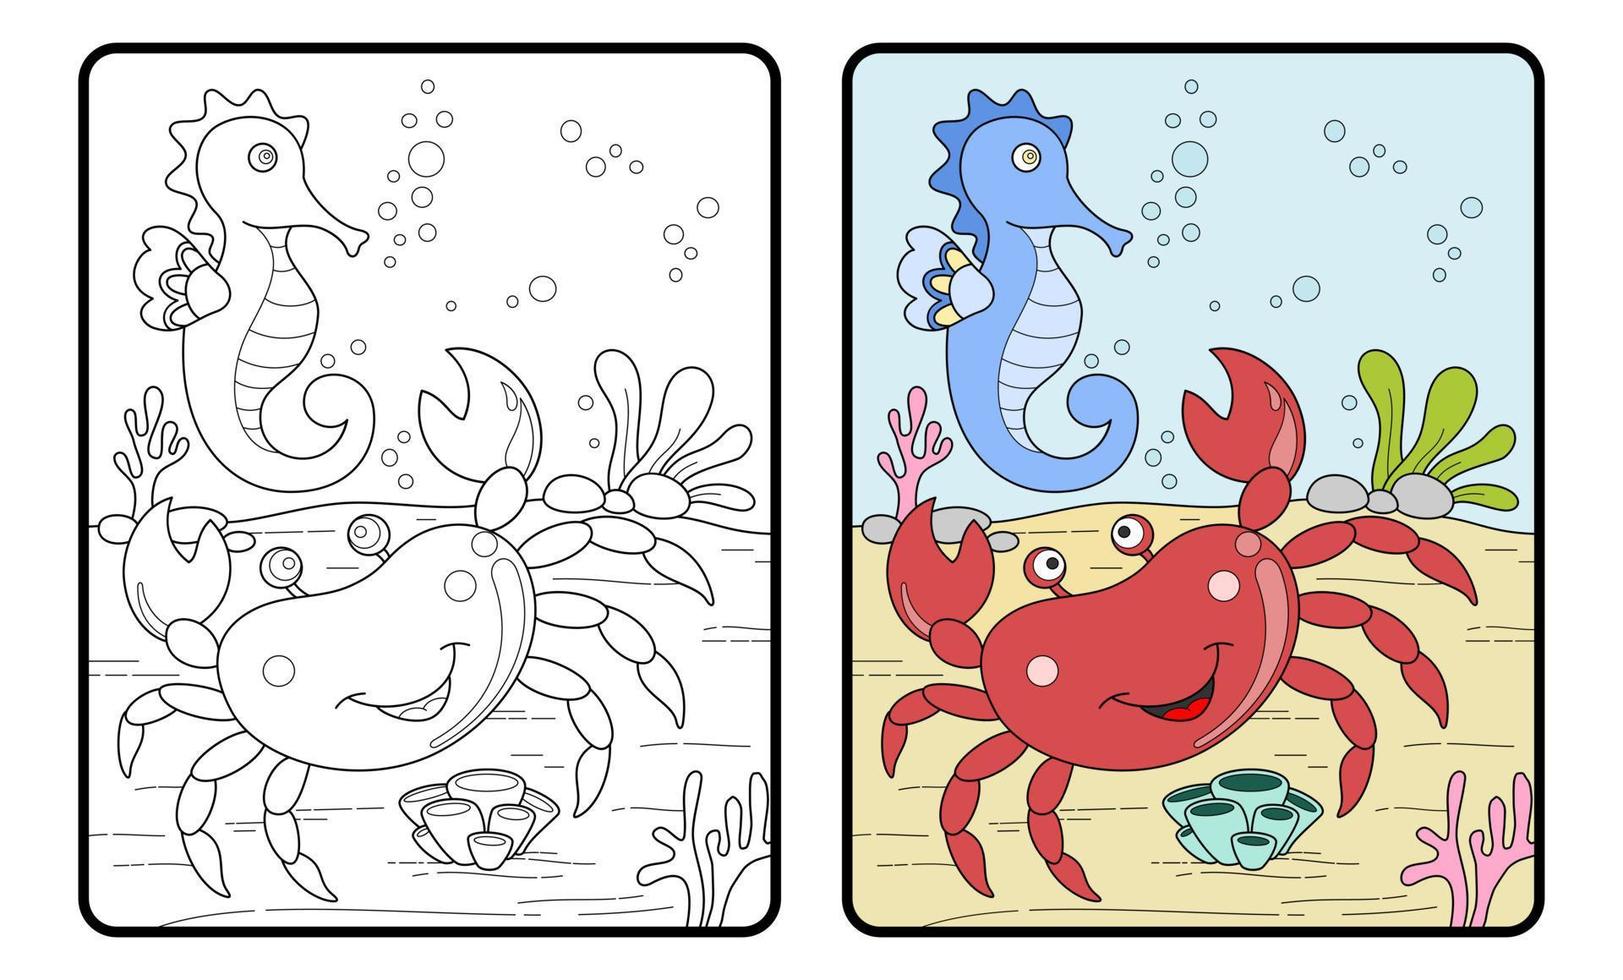 livro ou página para colorir de caranguejo e cavalos-marinhos, educação para crianças vetor